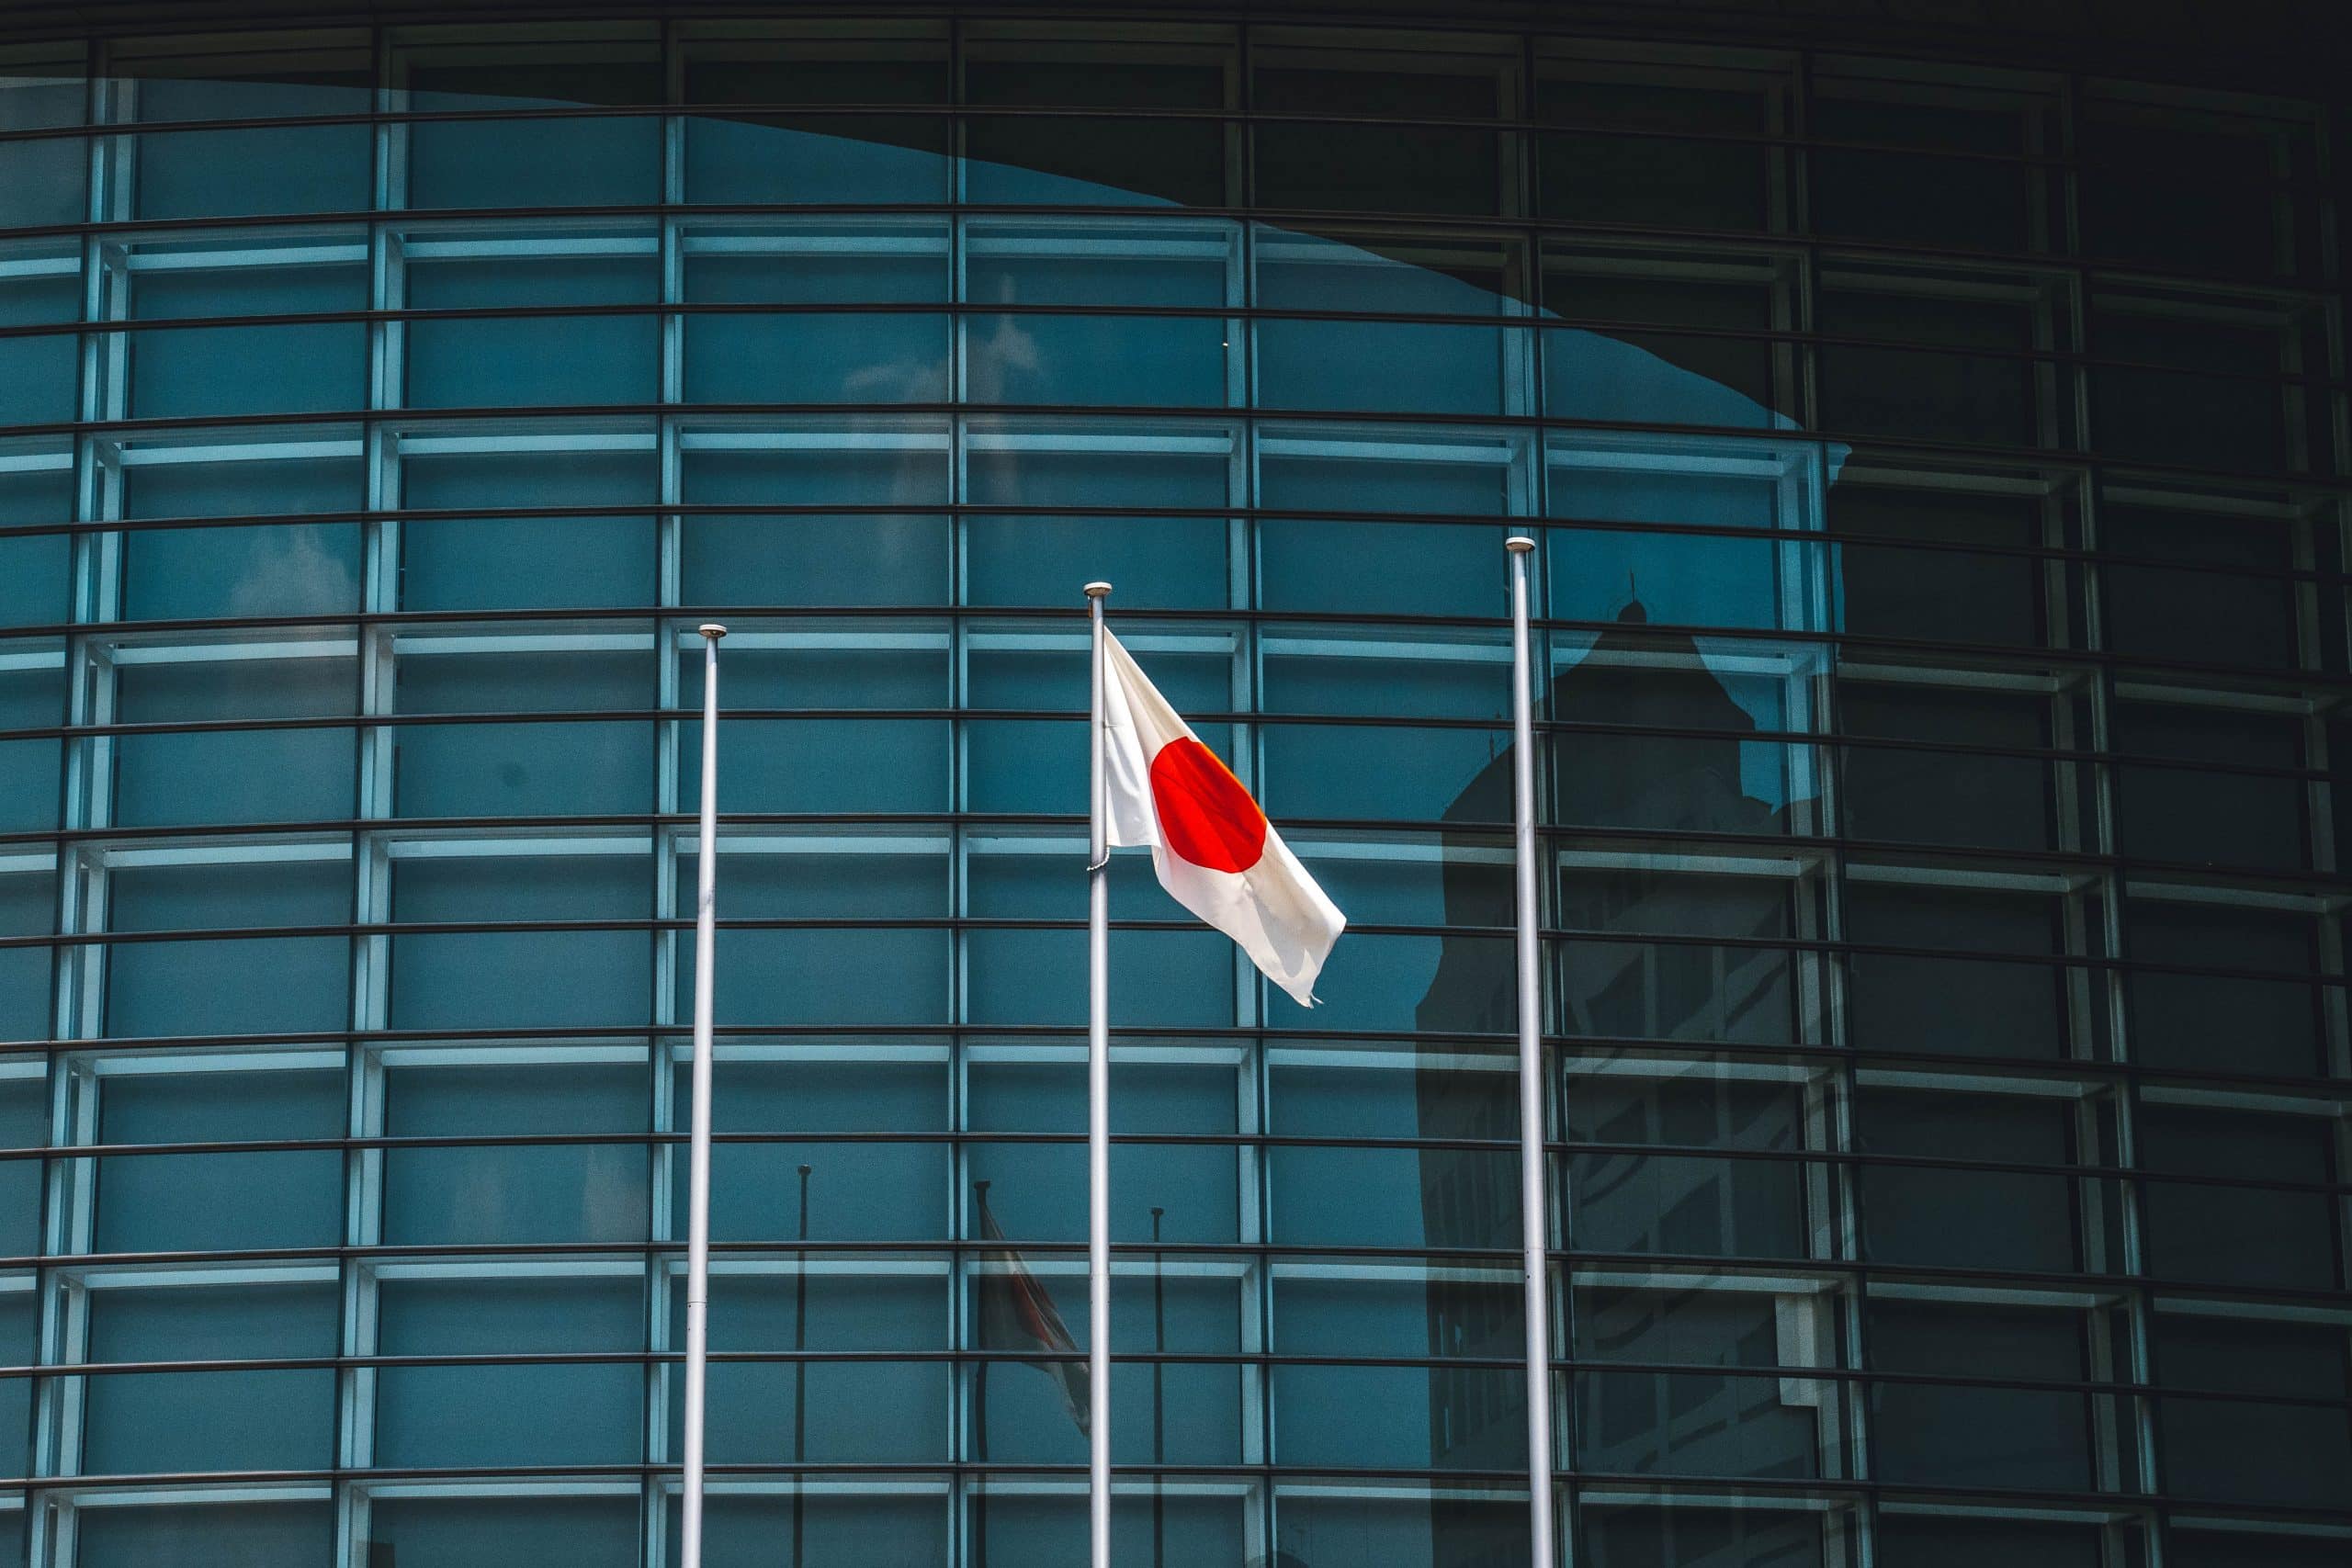 Le drapeau japonais flotte devant un bâtiment.